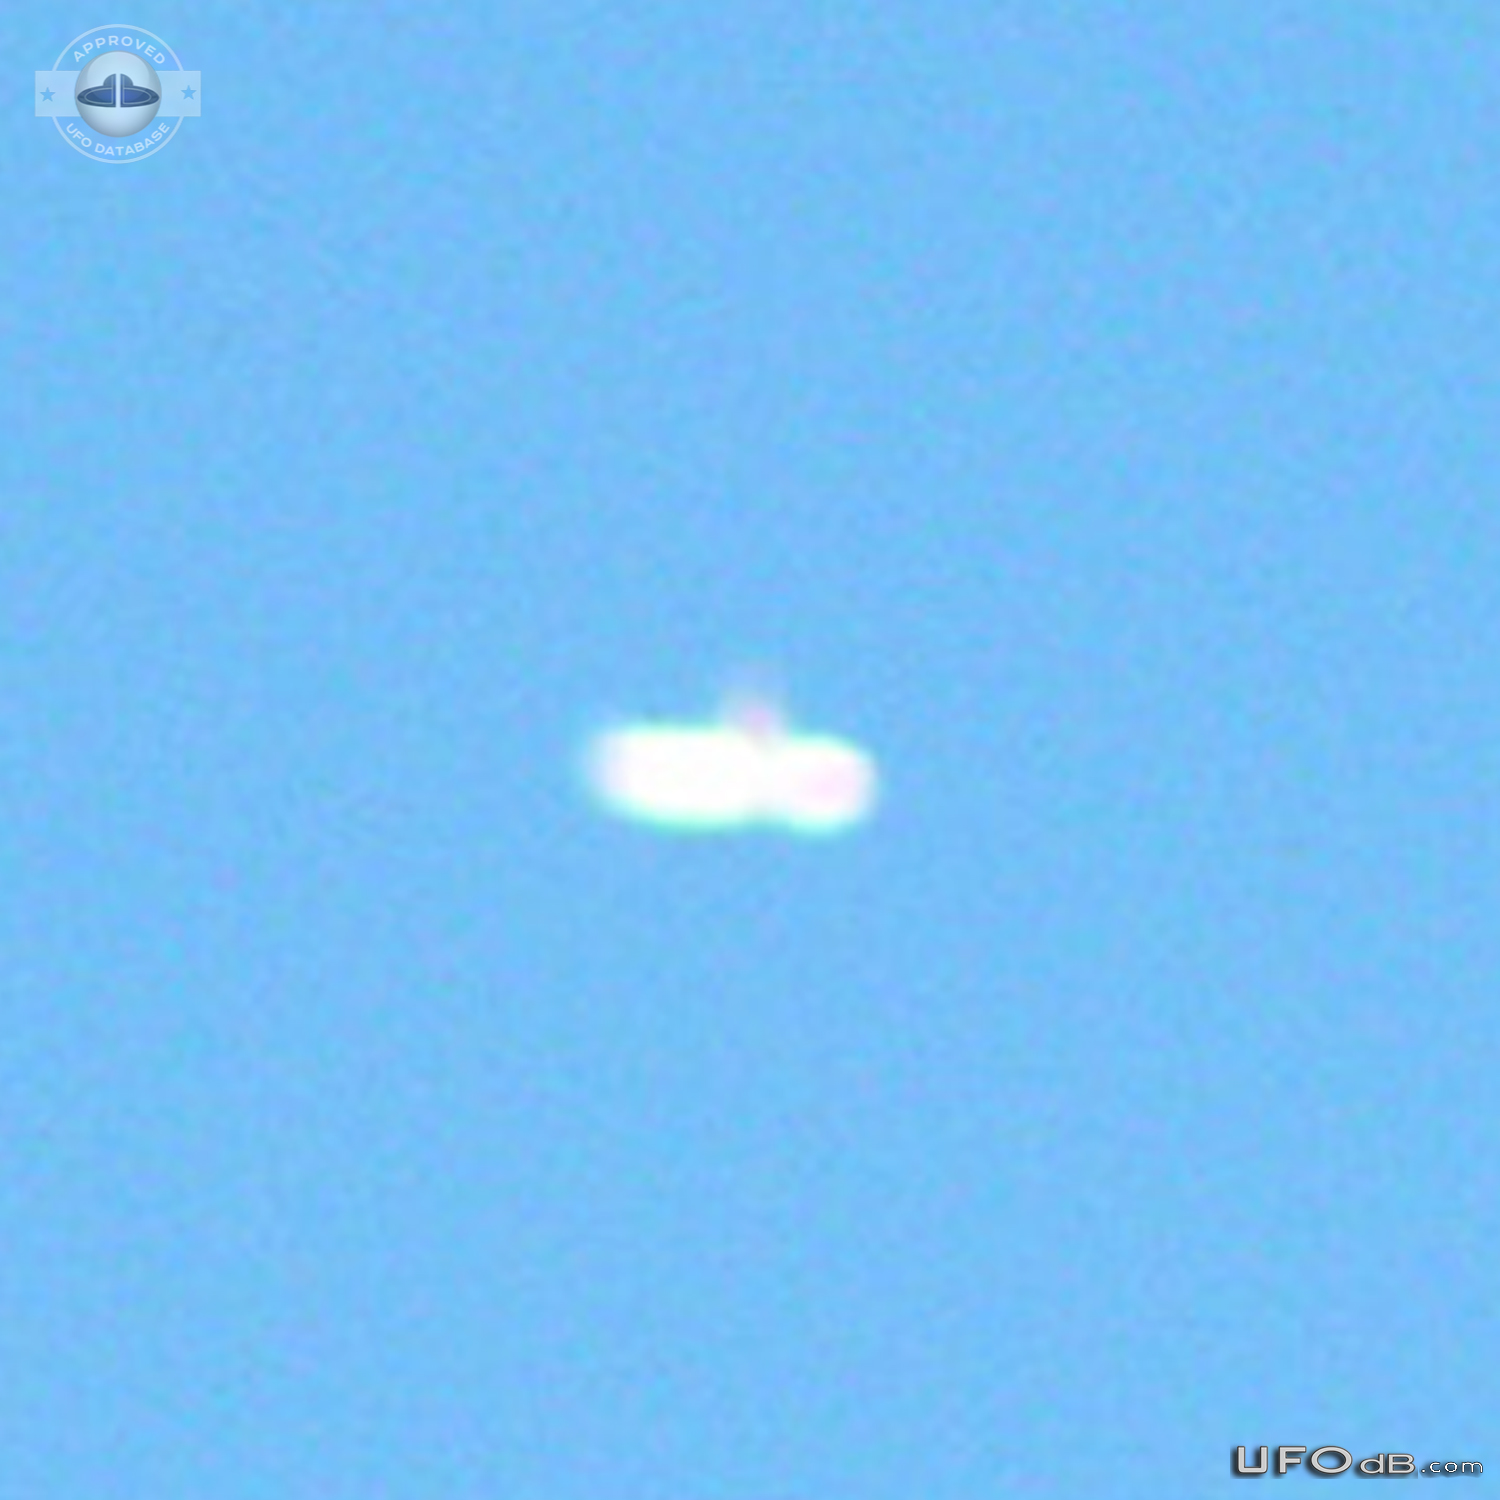 Donut UFO seen over the farm in Alberta Canada in 2004 UFO Picture #835-4